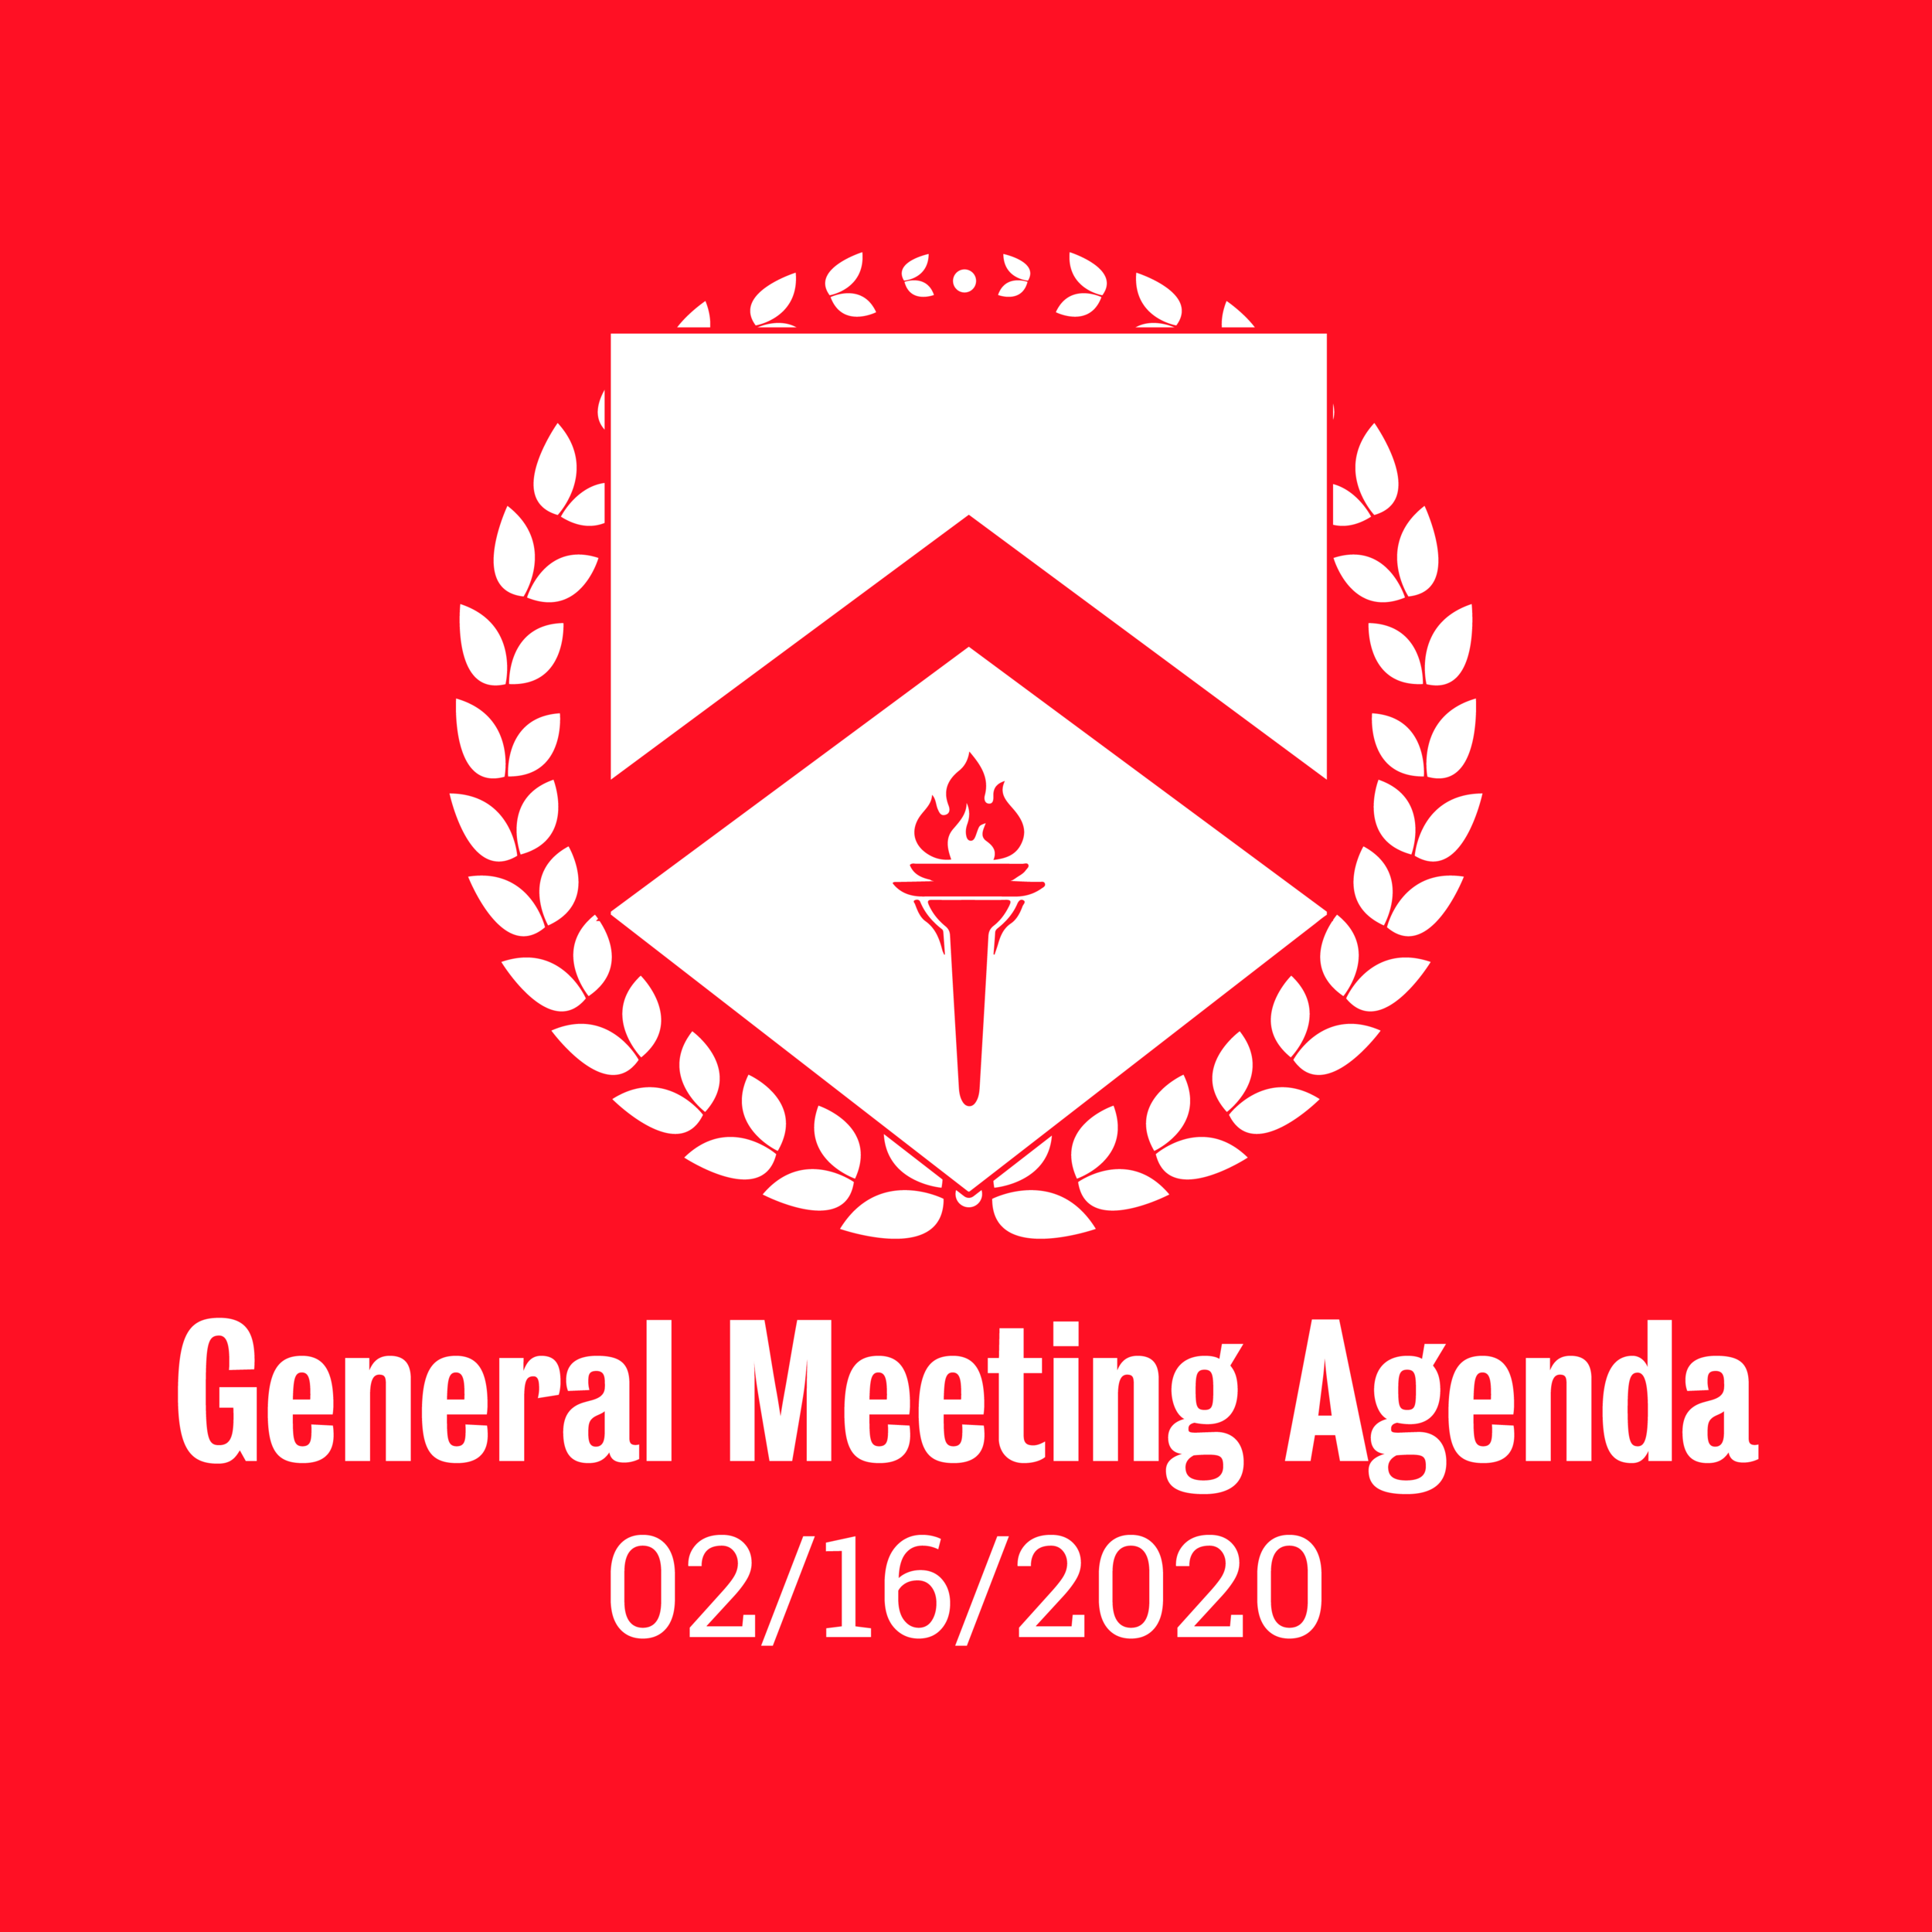 General Meeting Agenda 02/16/2020